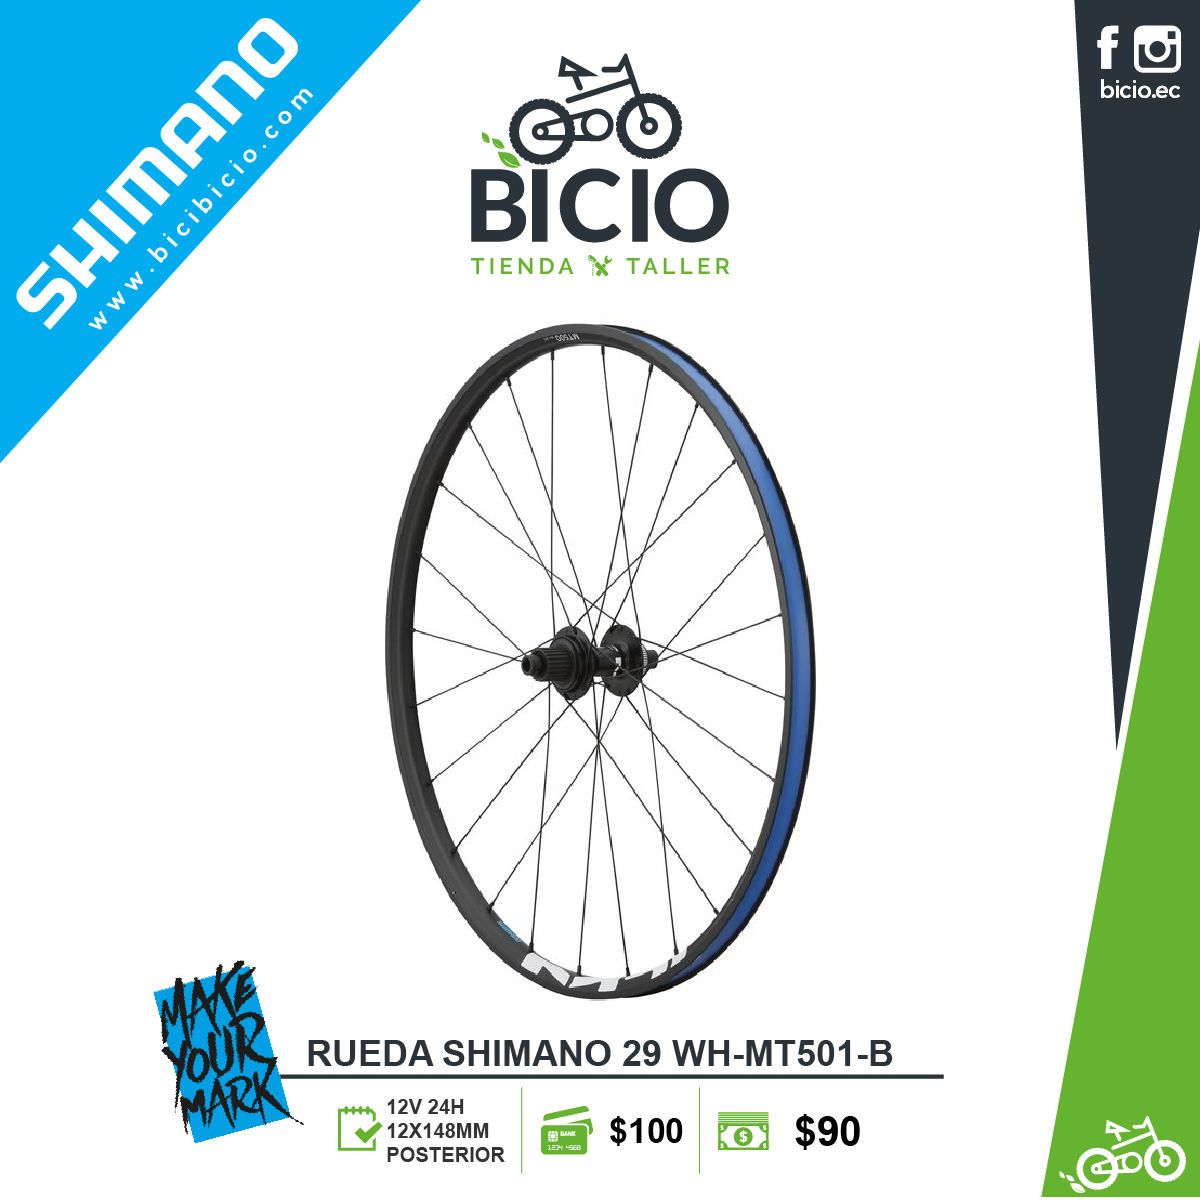 hazlo plano tarifa Corroer Rueda SHIMANO 29" MT501 Posterior - Bicio tienda - taller de bicicletas